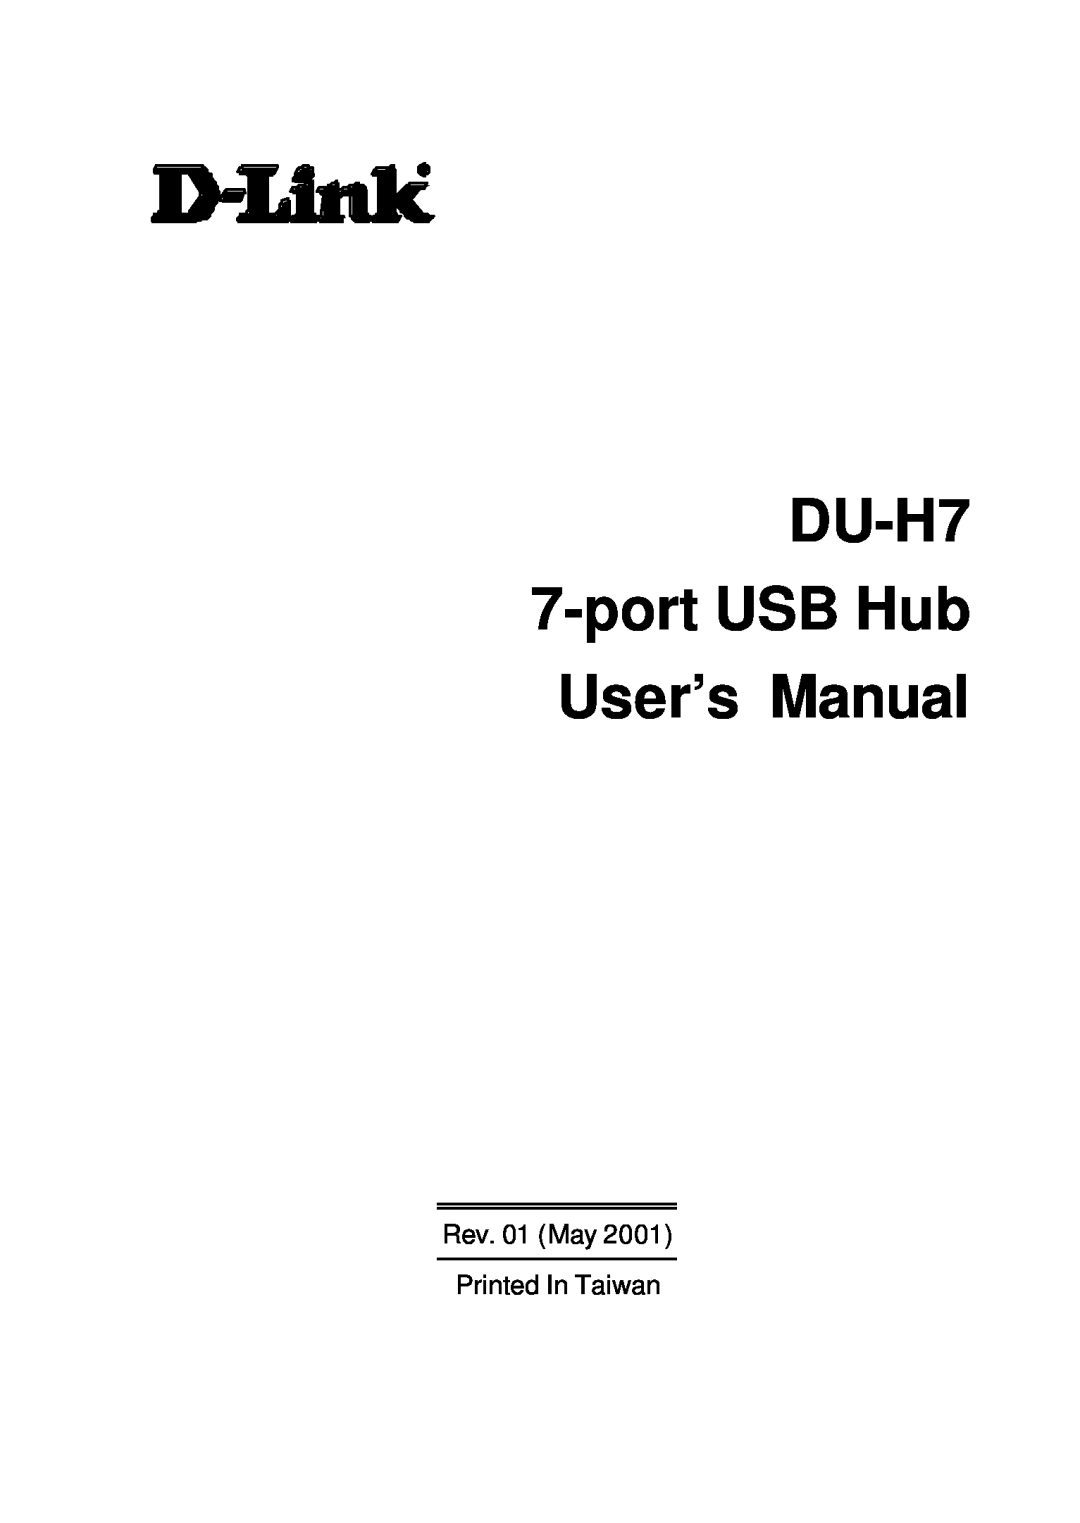 D-Link user manual DU-H7 7-port USB Hub User’s Manual, Rev. 01 May Printed In Taiwan 